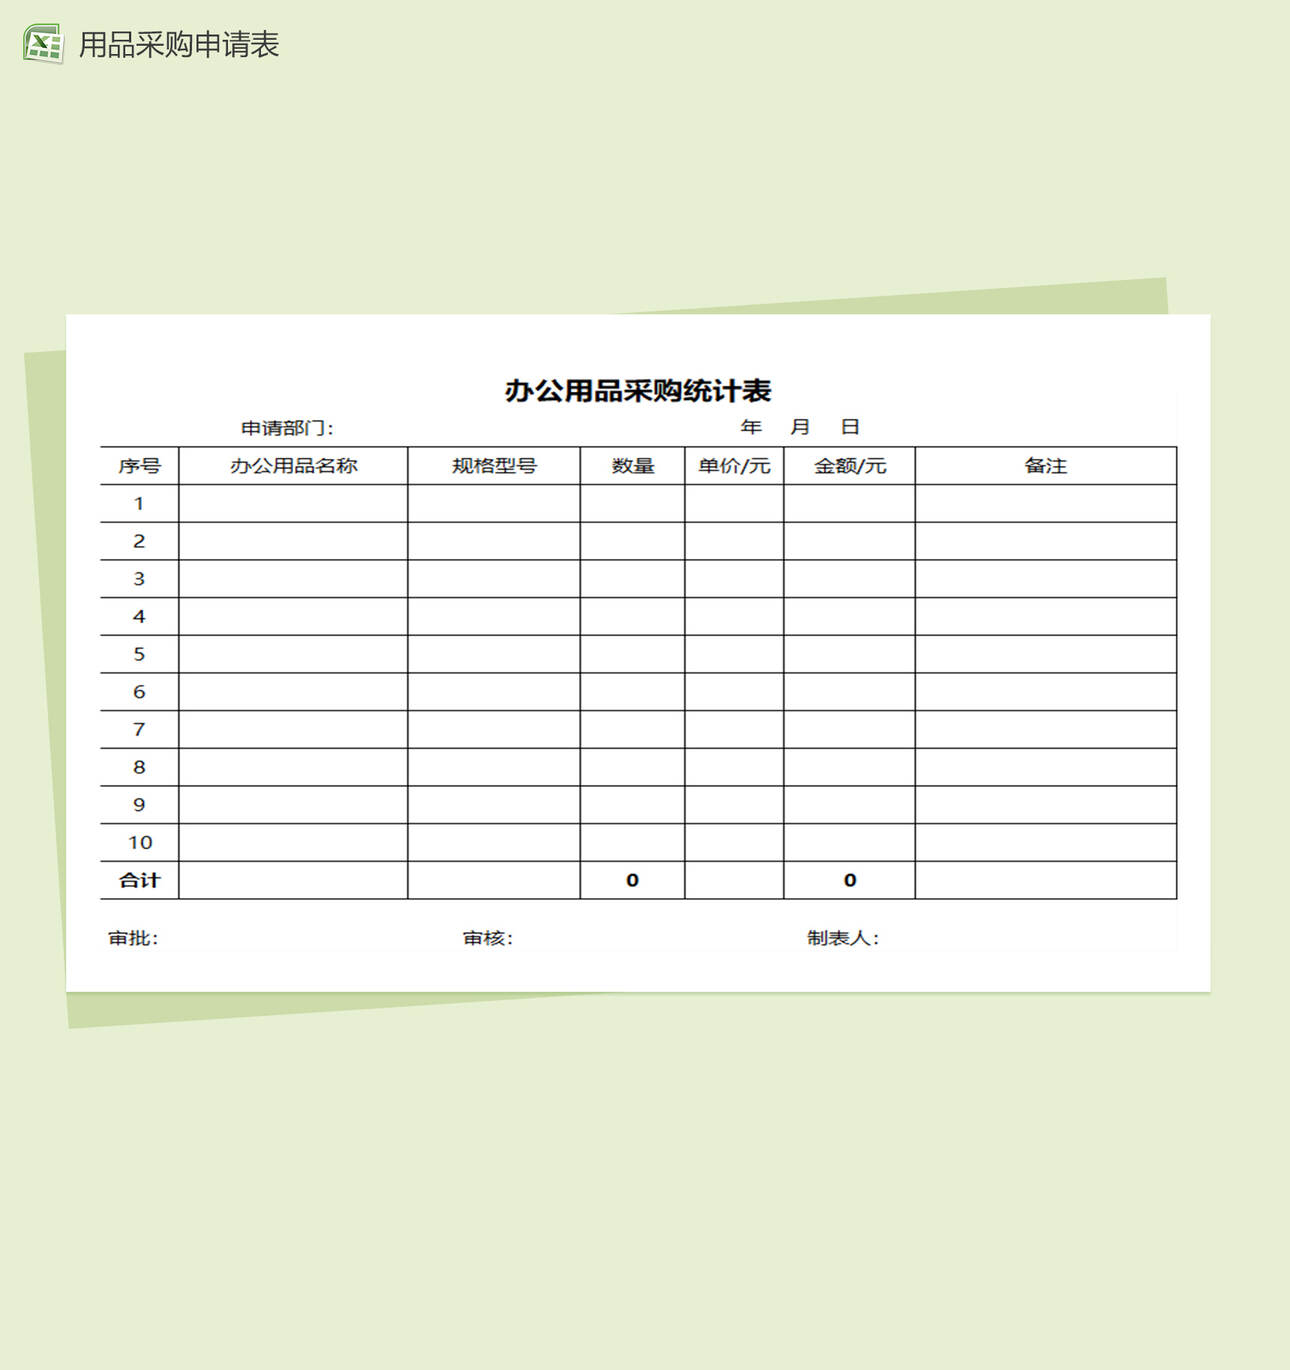 办公用品采购登记图表Excel表格制作模板